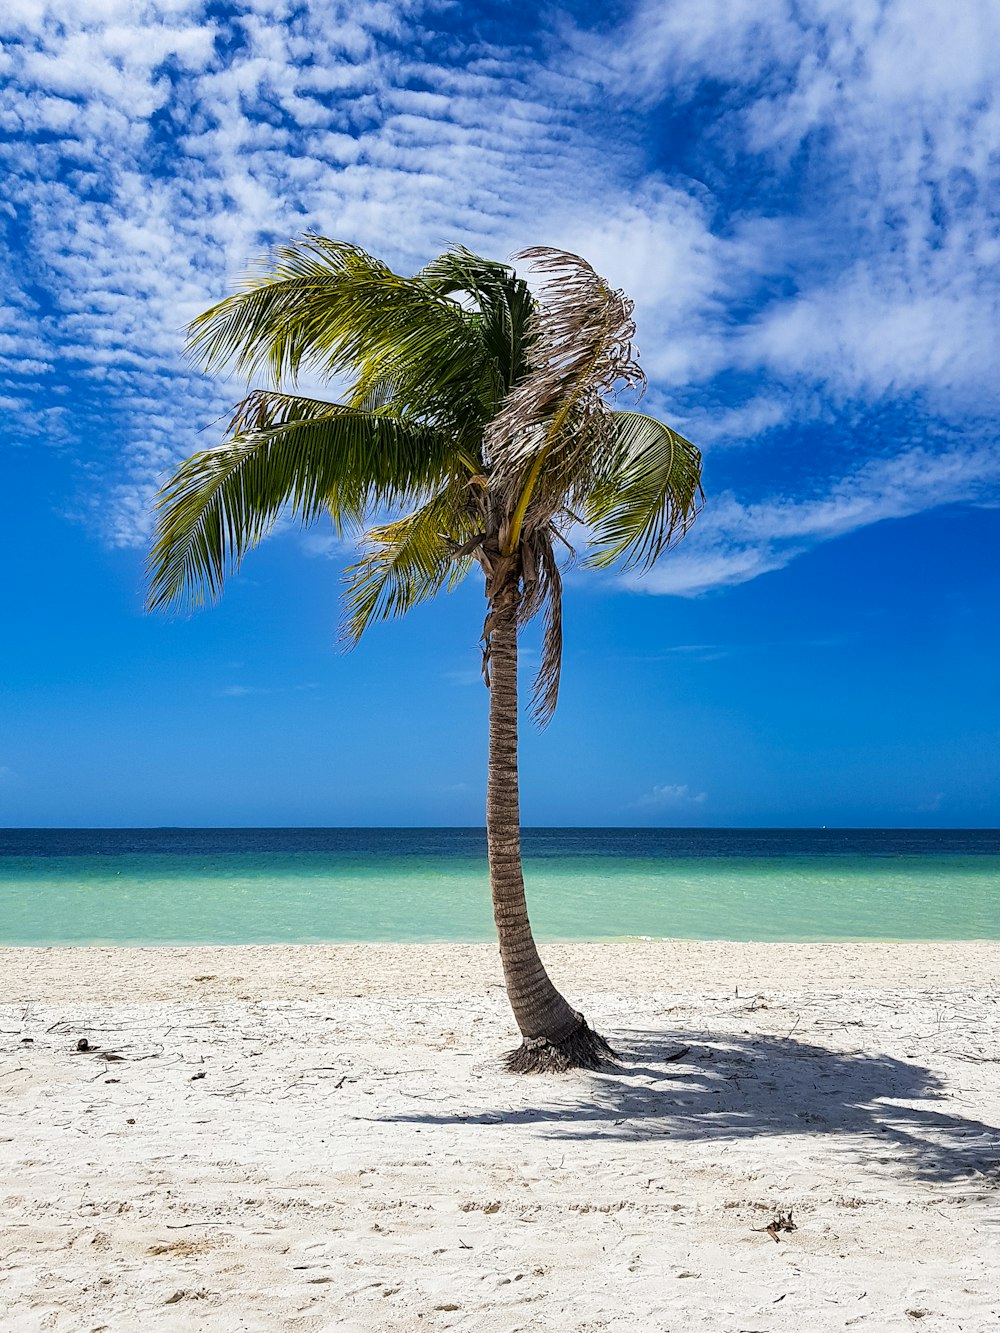 a palm tree on a beach with a blue sky